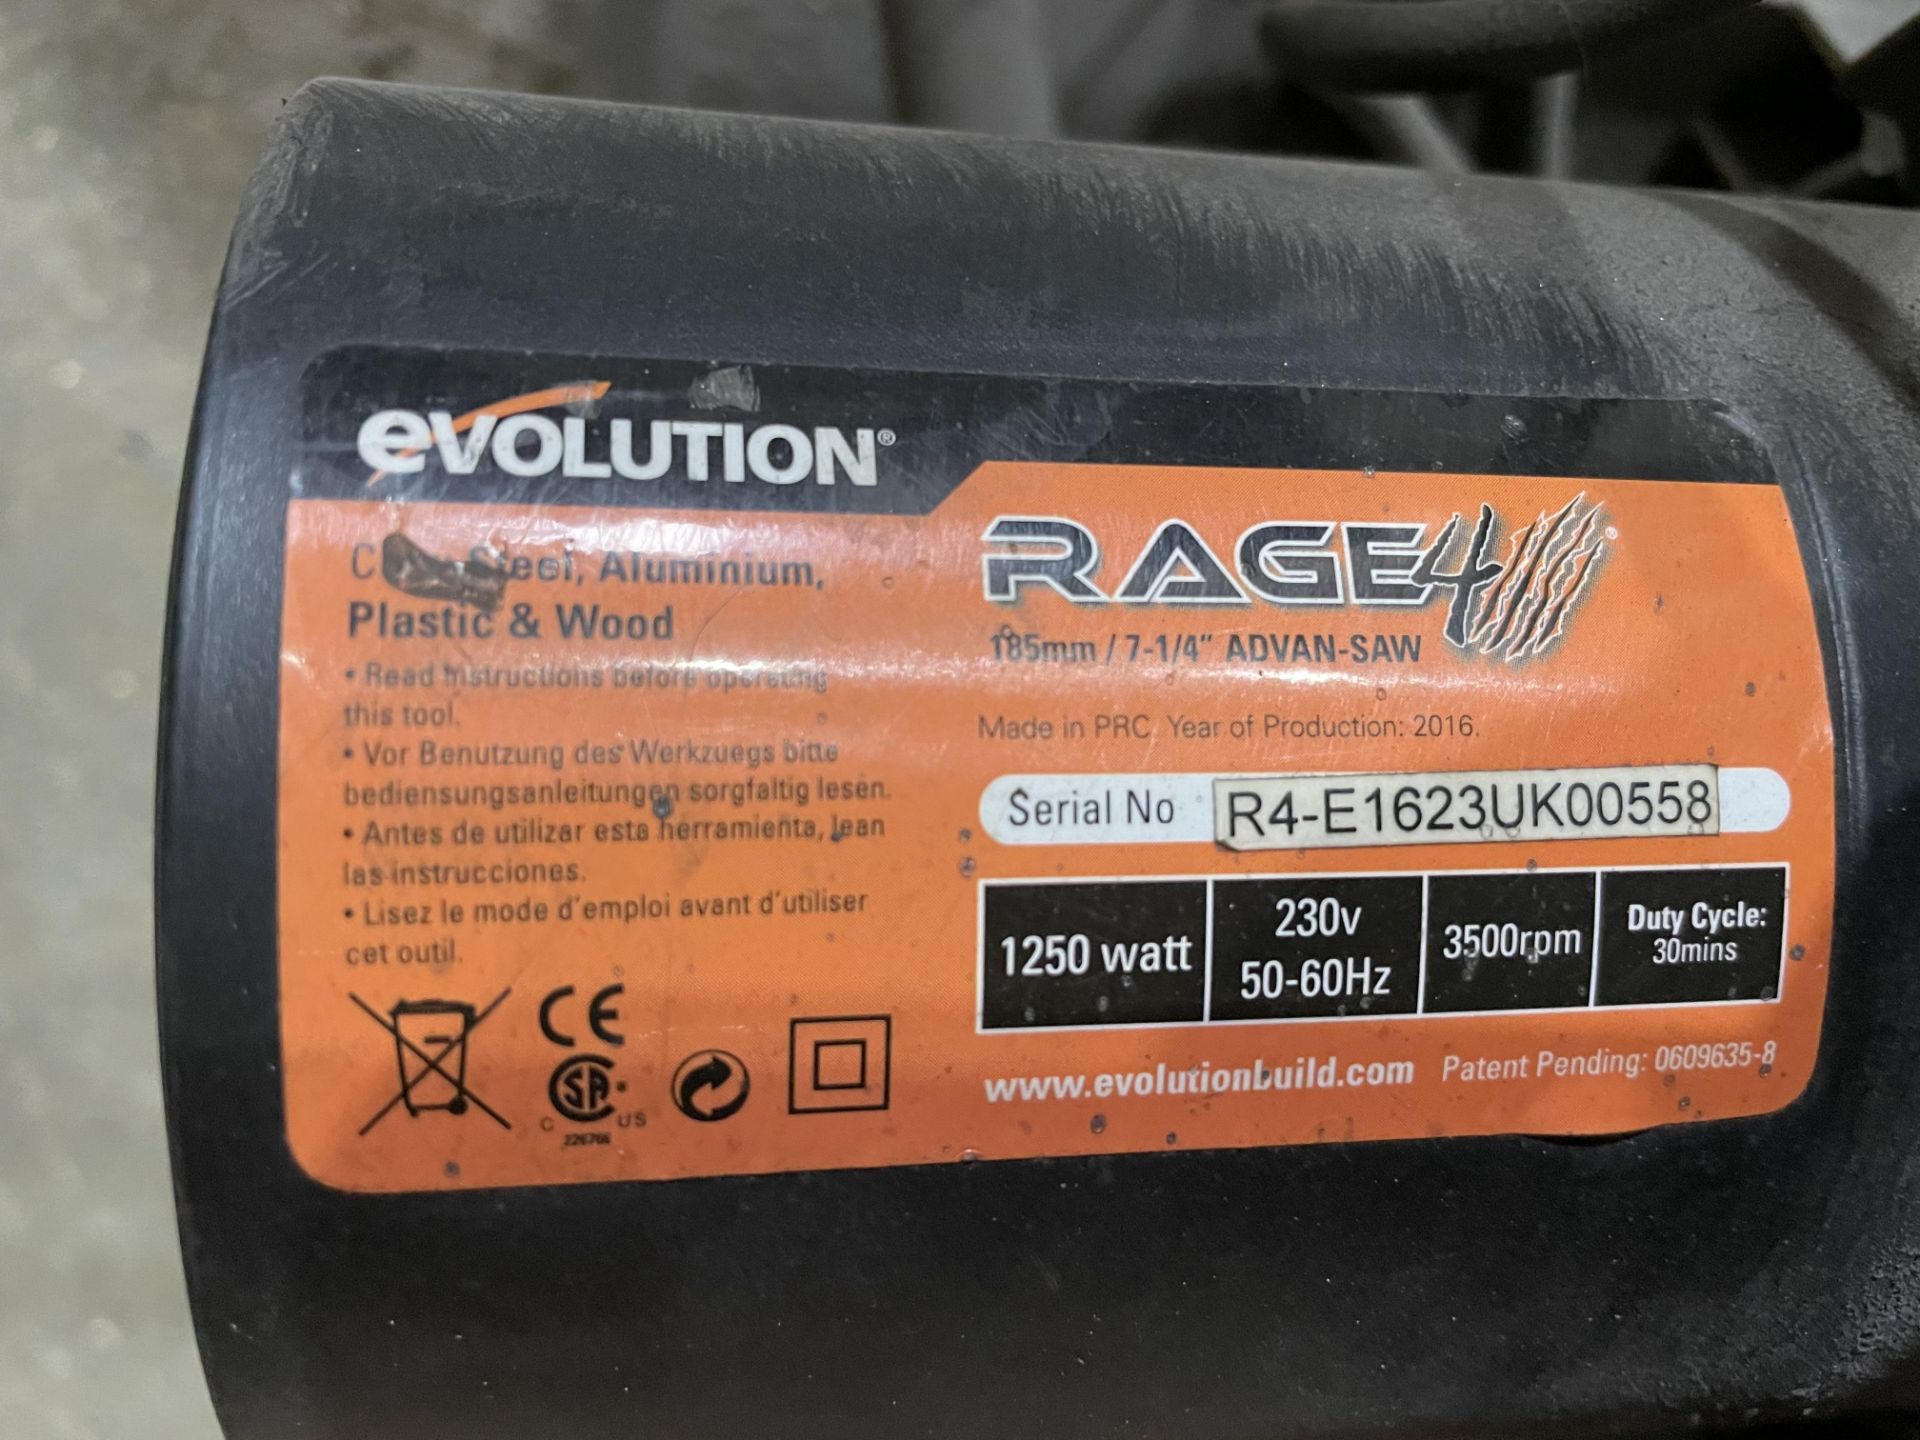 Evolution Rage 4 185mm Chop Saw - Ser No R4-E1623UK00558 - 230V. - Image 2 of 3